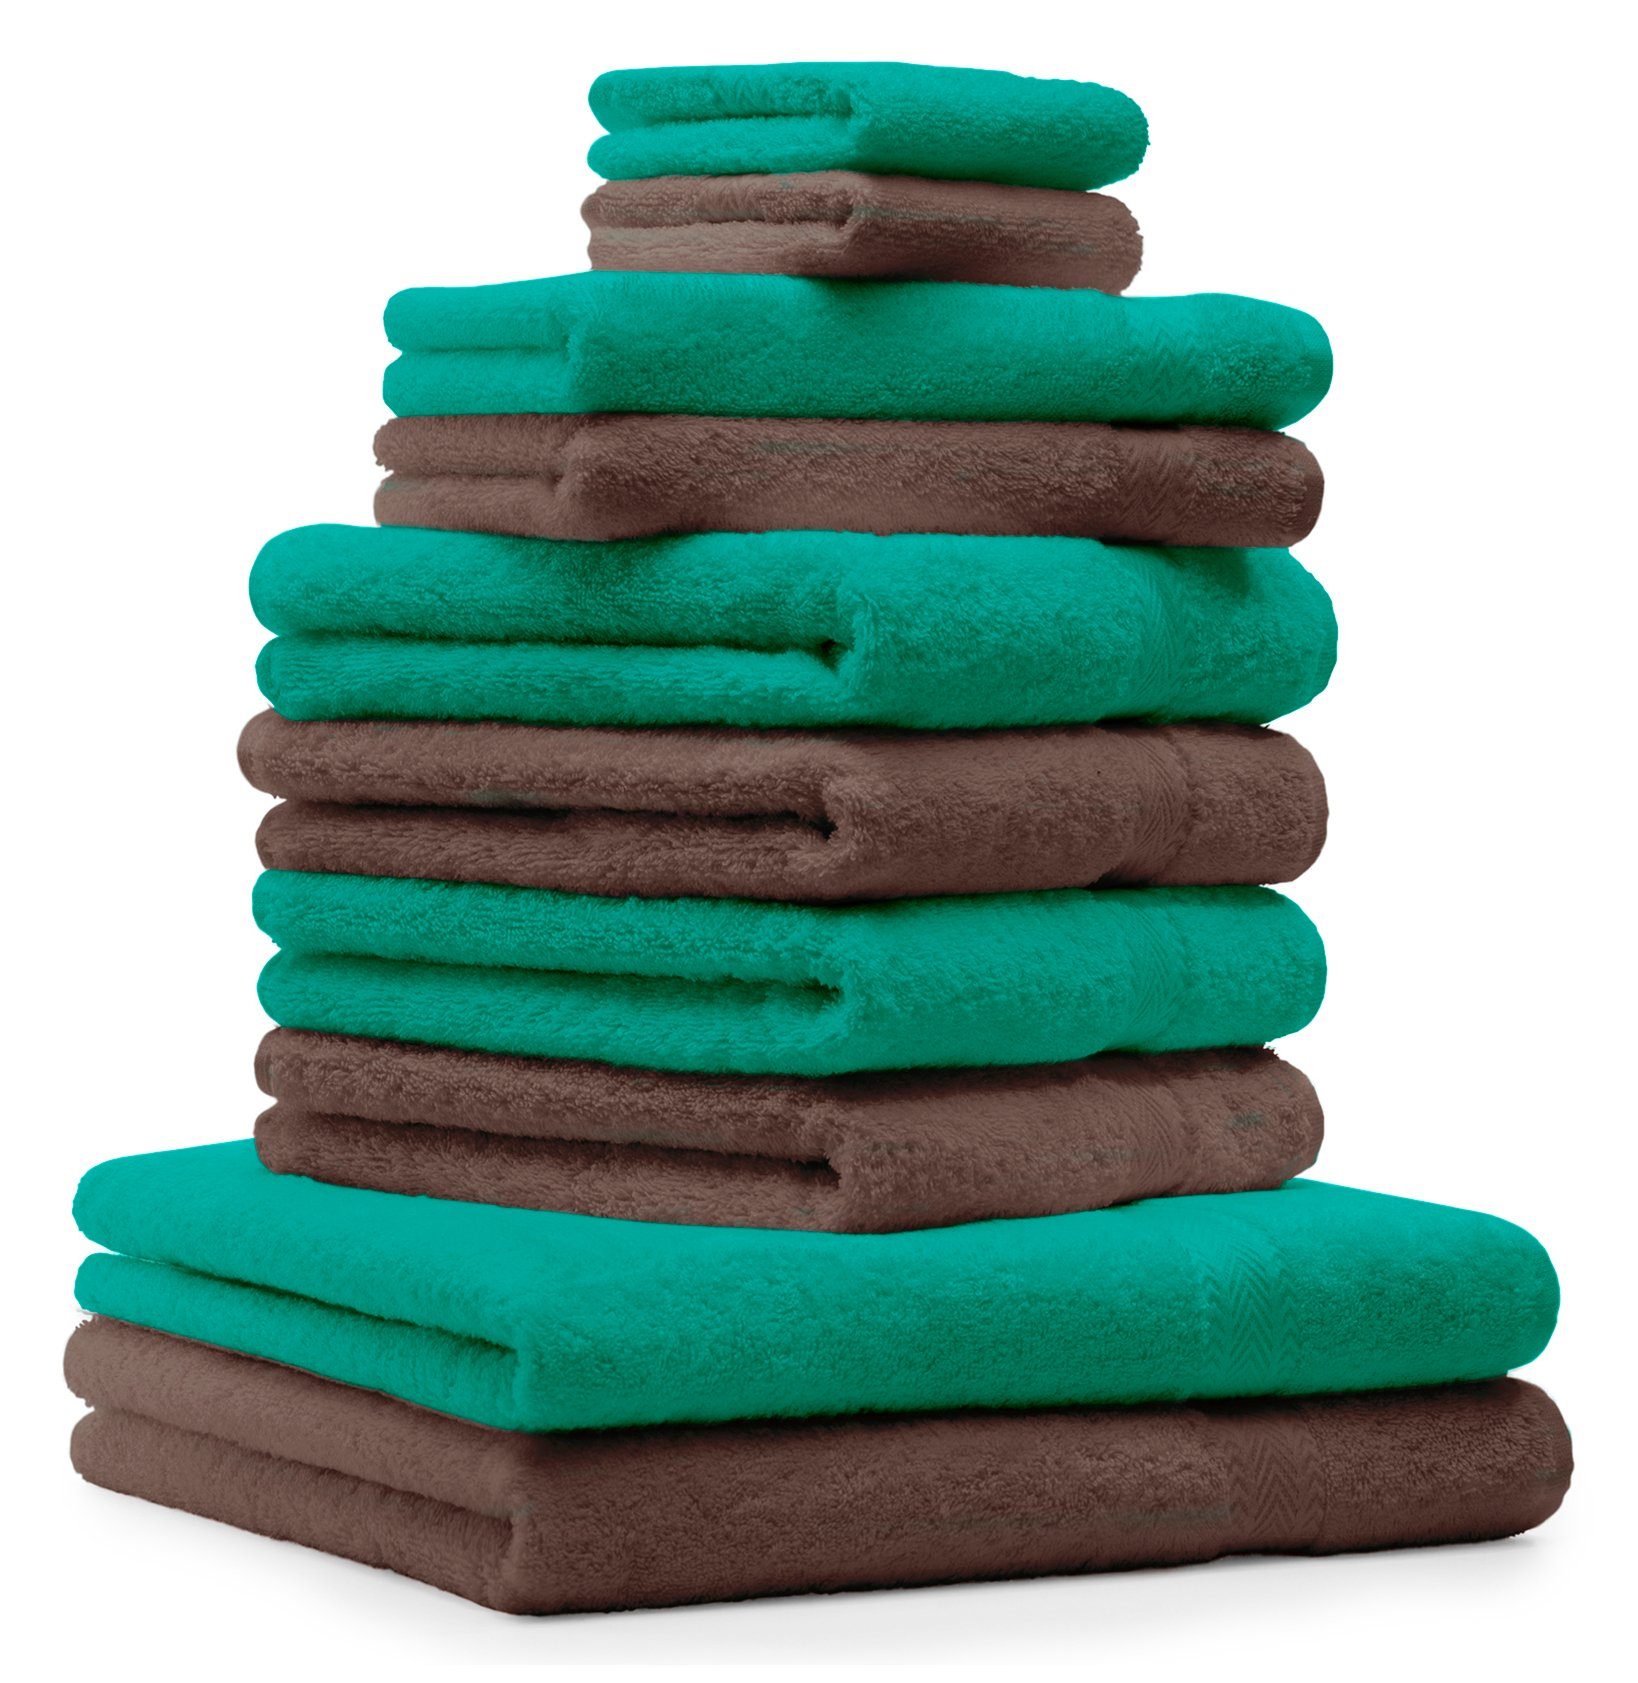 Smaragdgrün Nussbraun, Farbe & Handtuch Premium Handtuch-Set Betz Bauwmolle Set 100% 10-TLG.